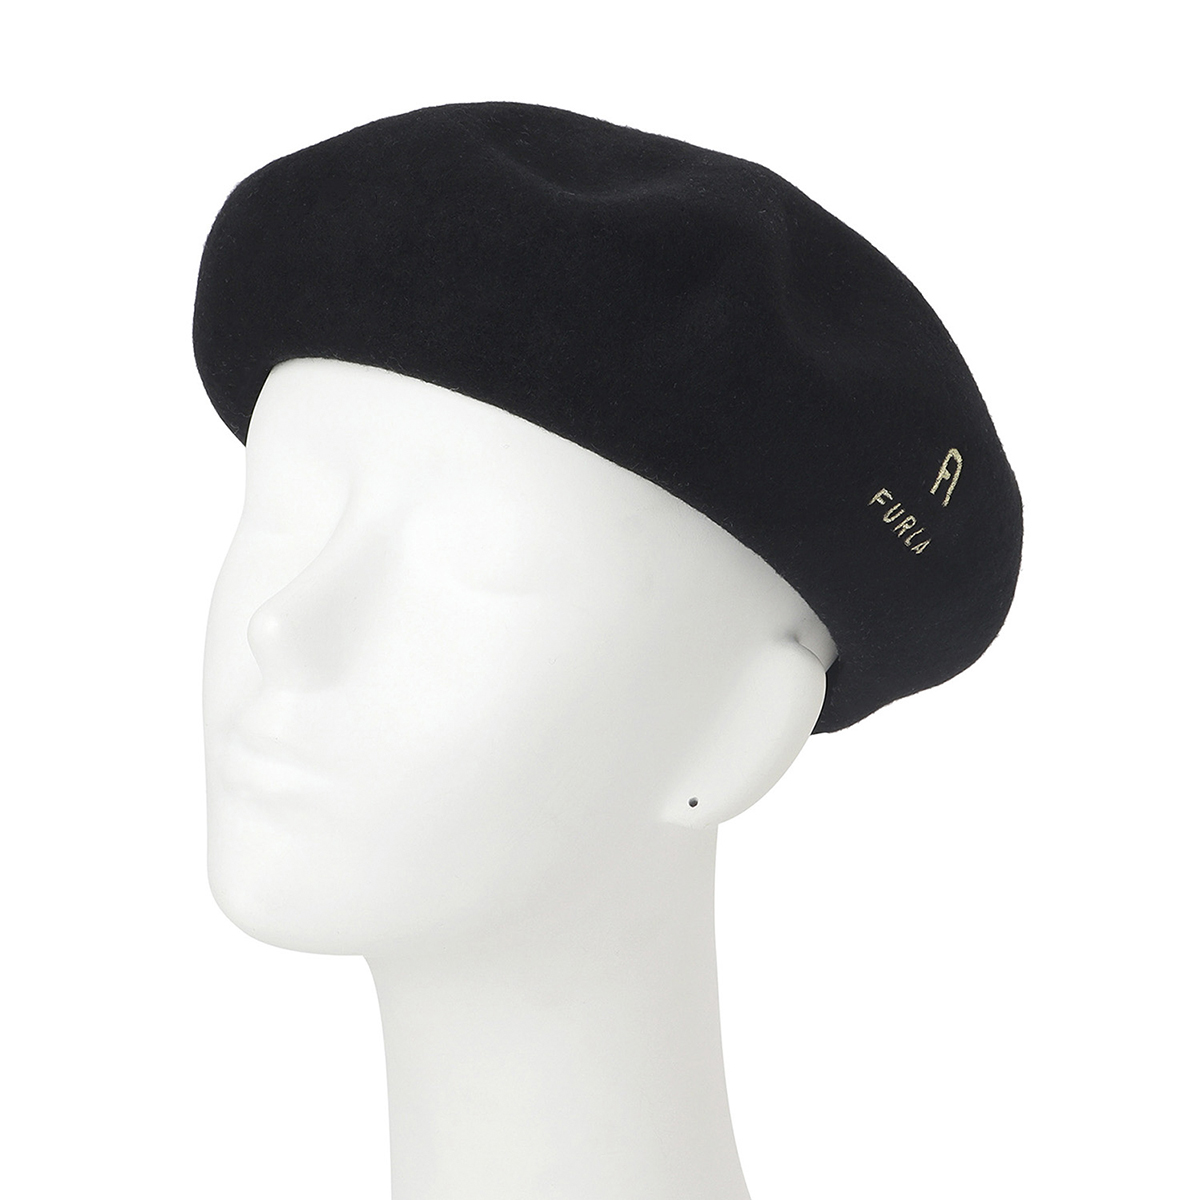 ロゴ入りバスクベレー帽 | フルラ(FURLA) | 2613569920 | マルイウェブ